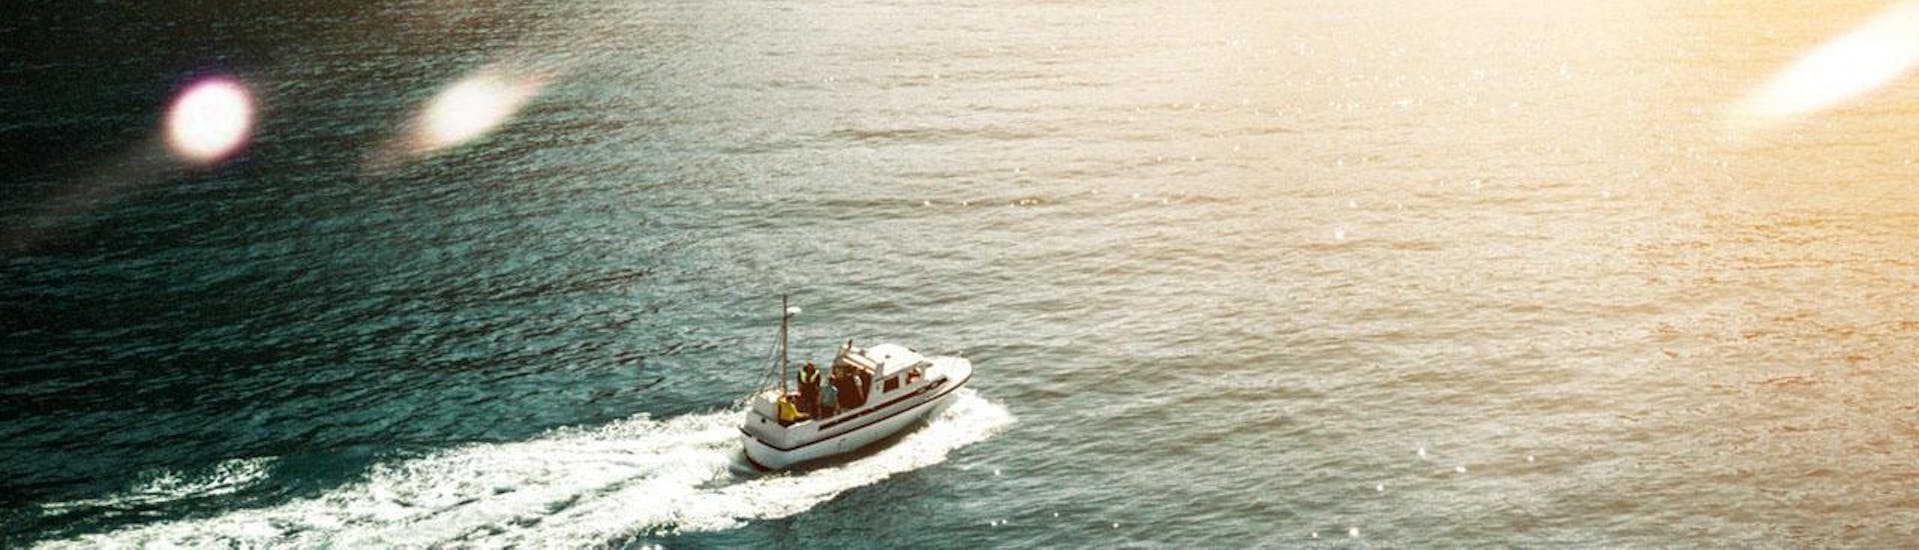 Photo du bateau disponible à la location par Kraken Sport Nautiques Hyères.